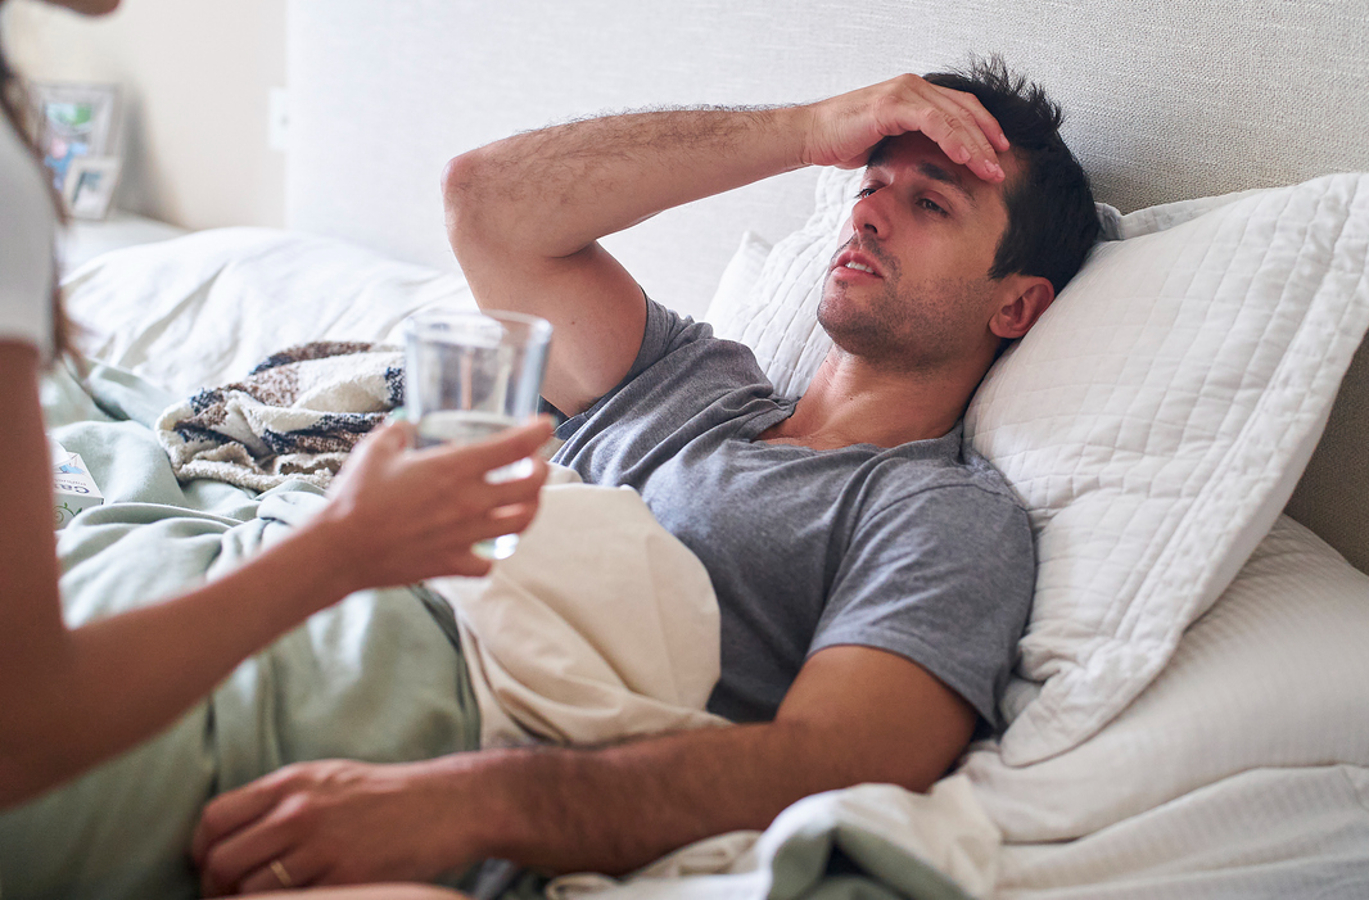 Os sintomas mais comuns incluem febre alta, dores musculares, dor de cabeça, náuseas e vômitos